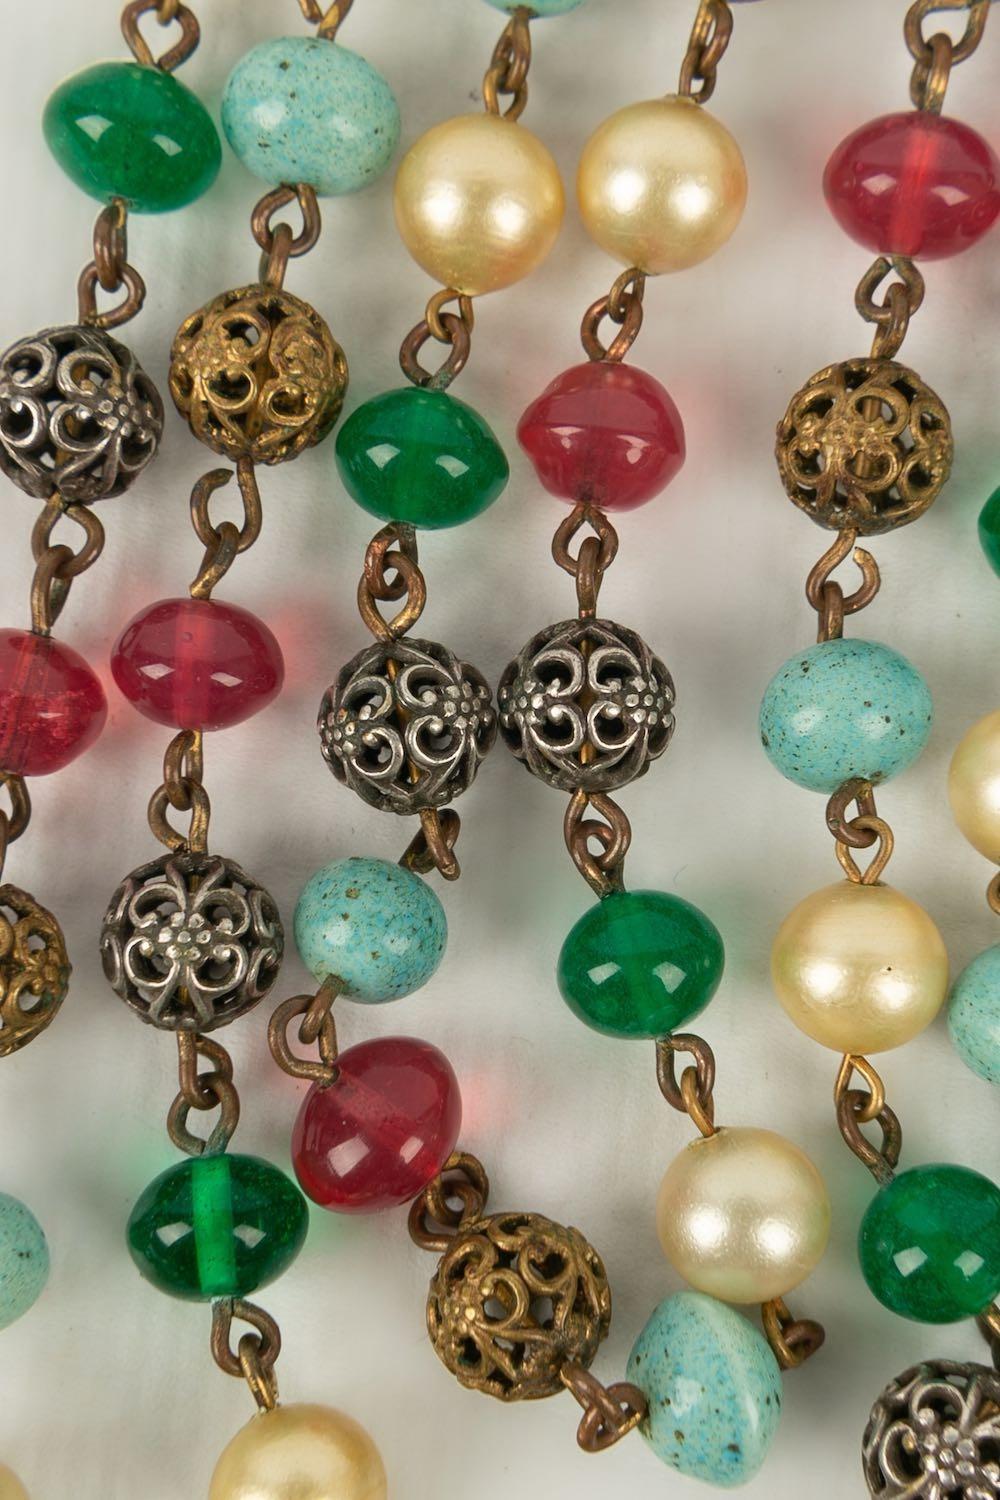 Antike Halskette aus dunkelgoldenem Metall, Glasperlen und Perlen.

Zusätzliche Informationen:
Zustand: Guter Zustand
Abmessungen: Länge: 65 cm

Sellers Referenz: BC93